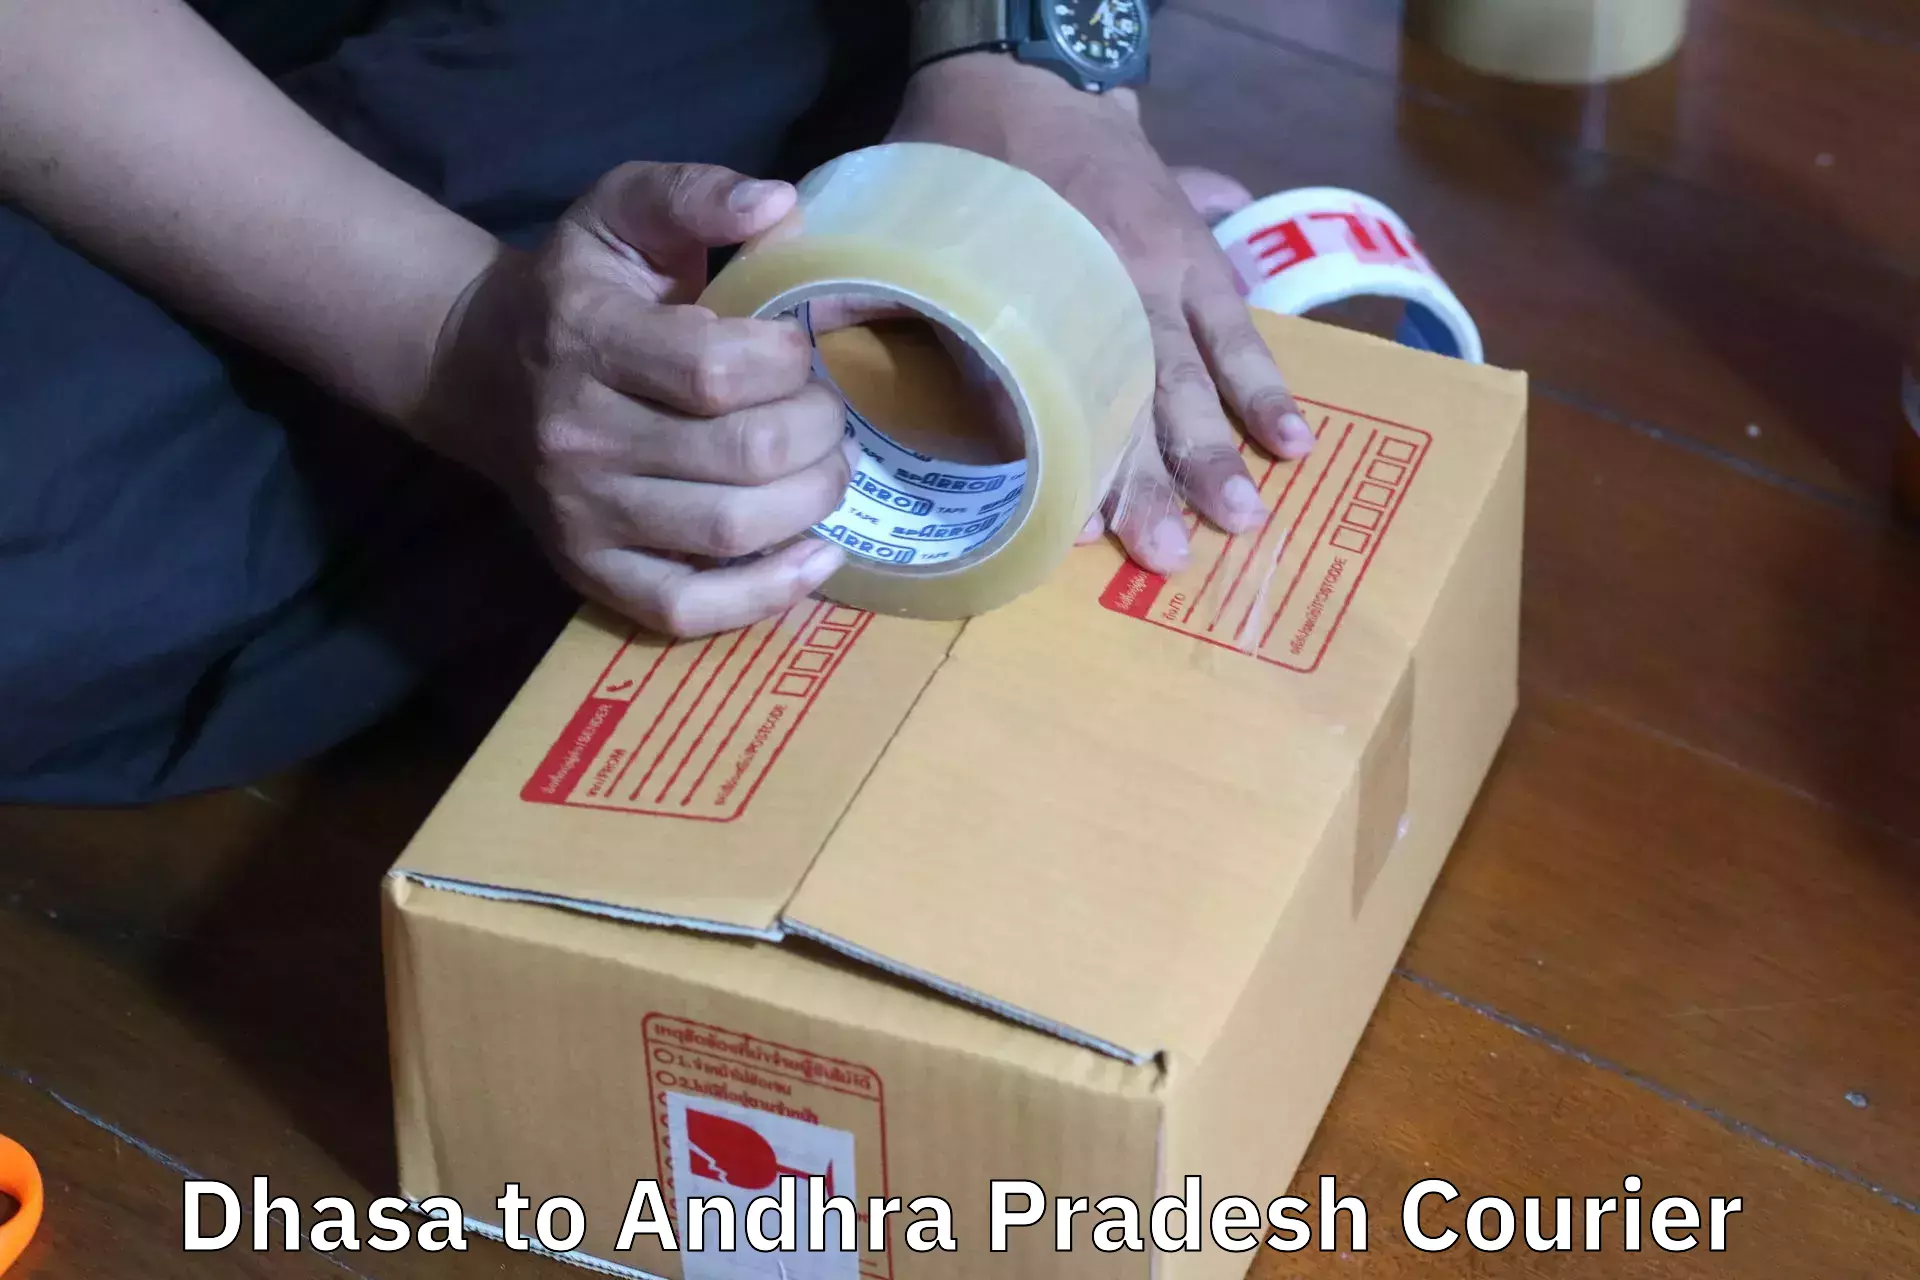 Residential furniture transport Dhasa to Andhra Pradesh